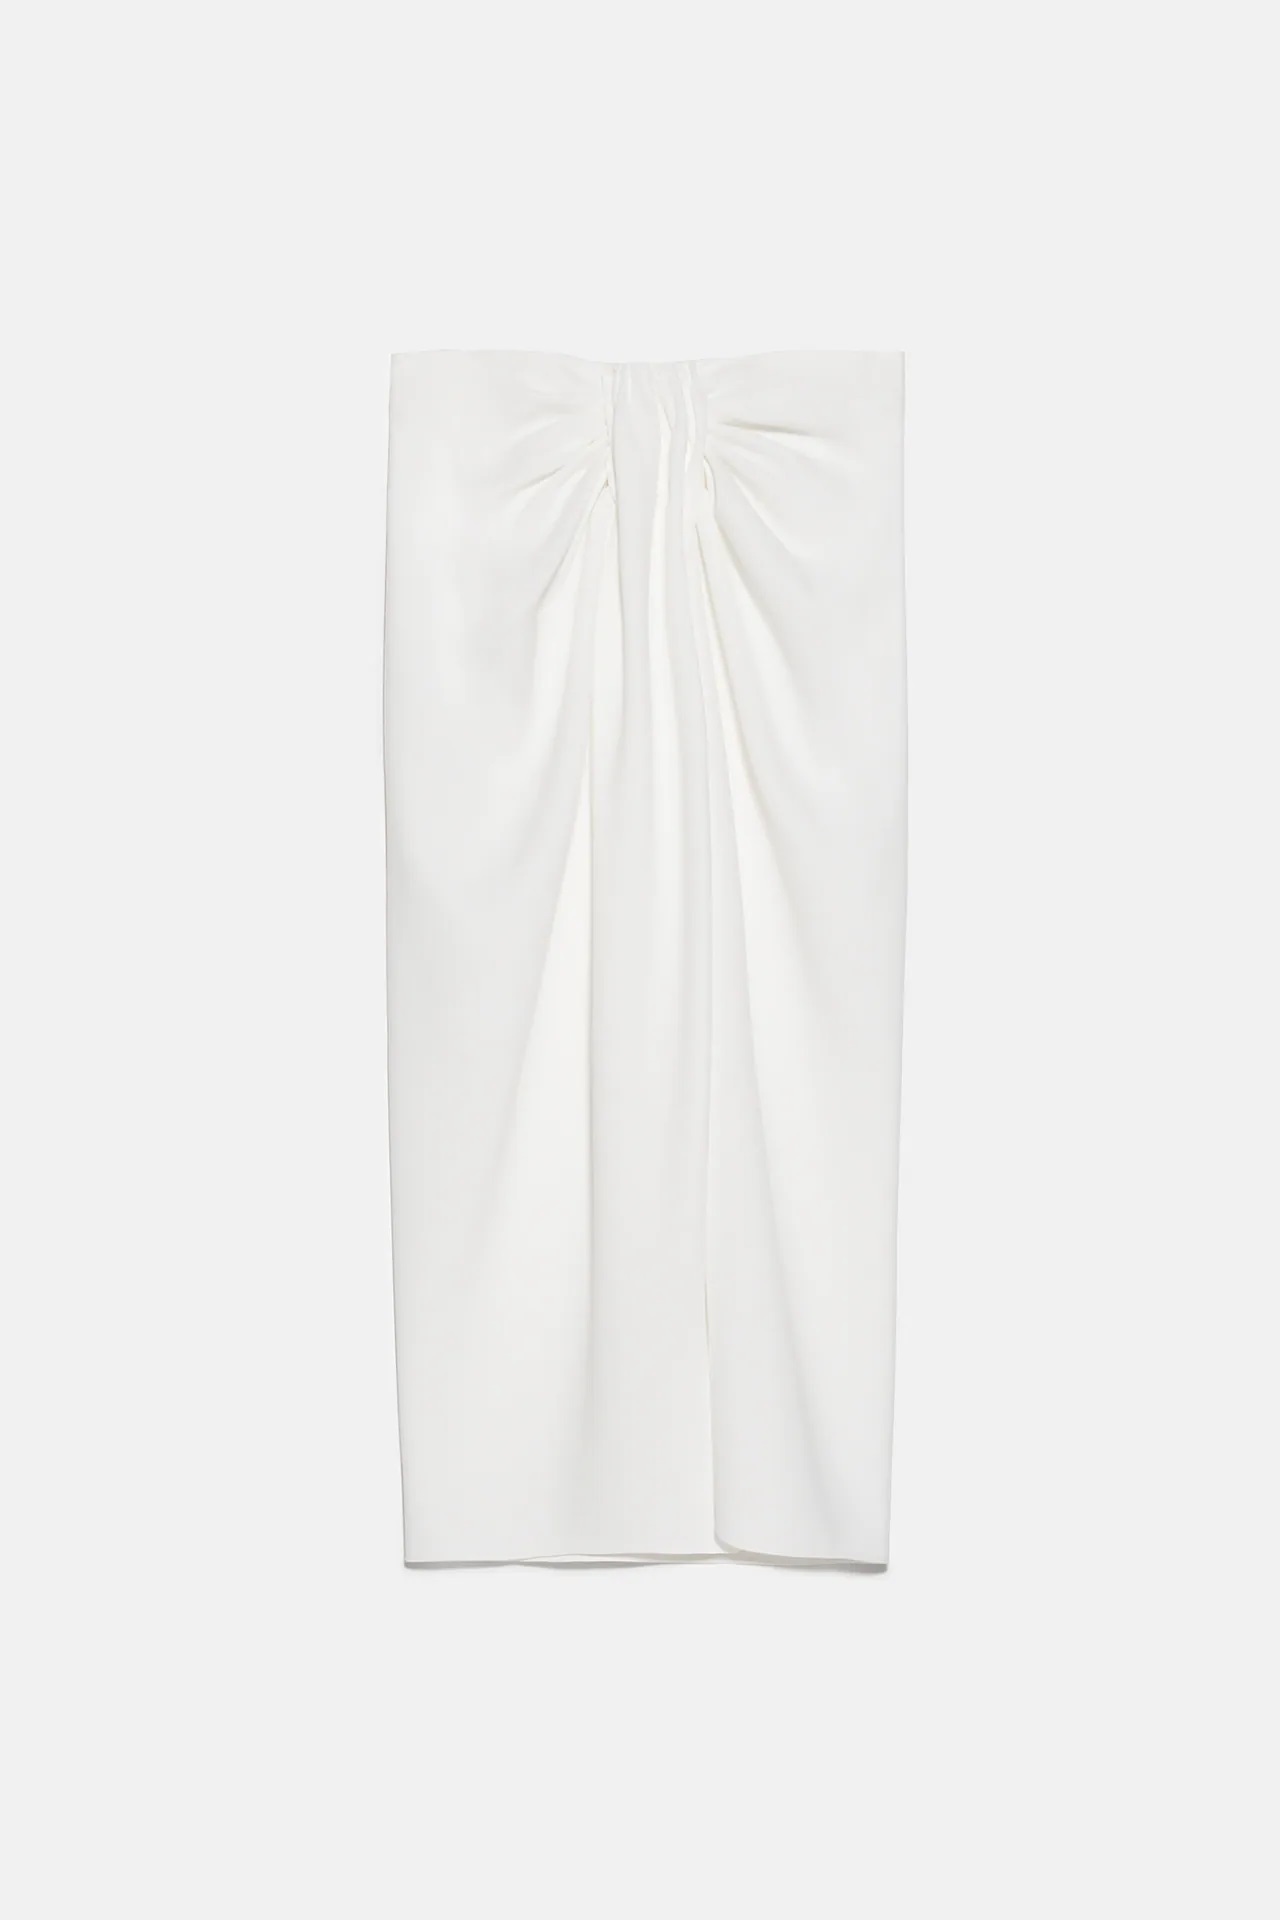 Zara: Esta es la falda pareo blanca que triunfará este verano